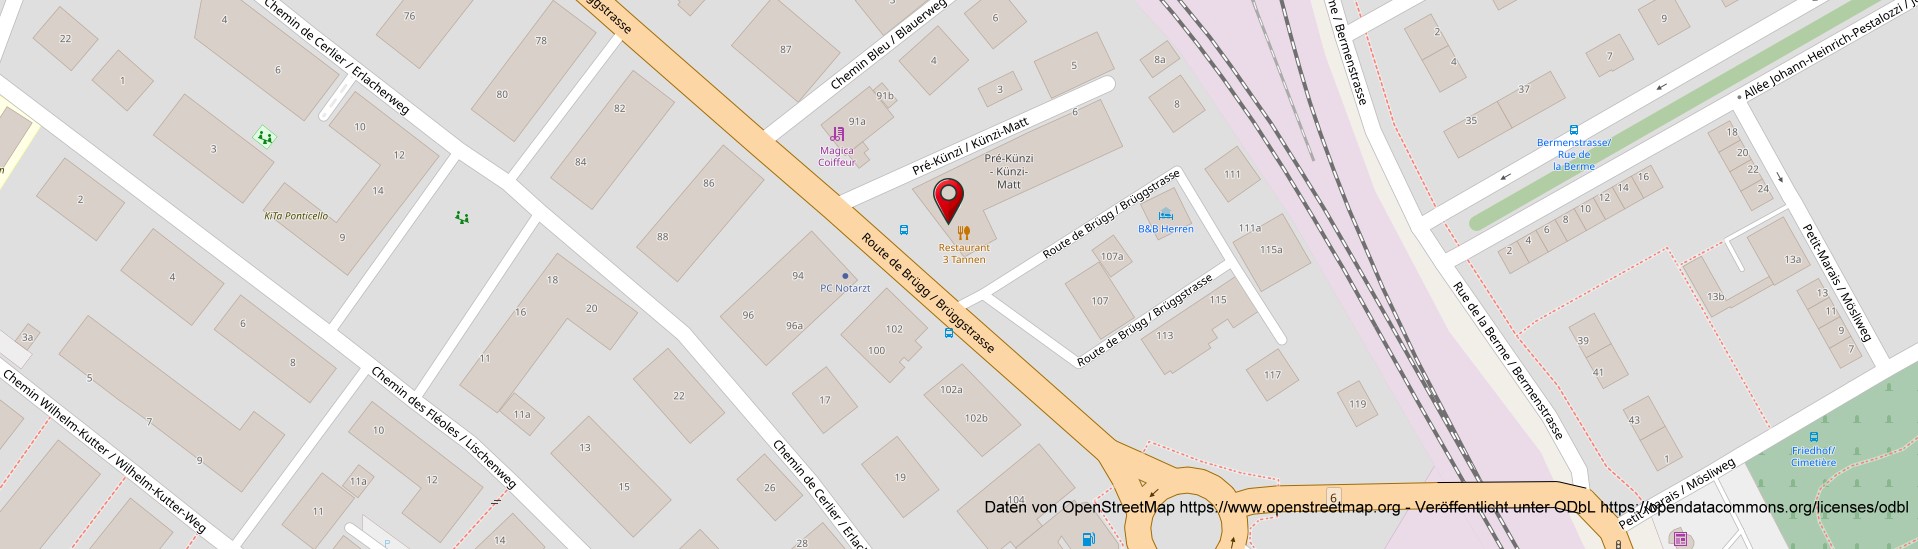 Openstreetmap - Pizzeria 3 Tannen Biel Bienne